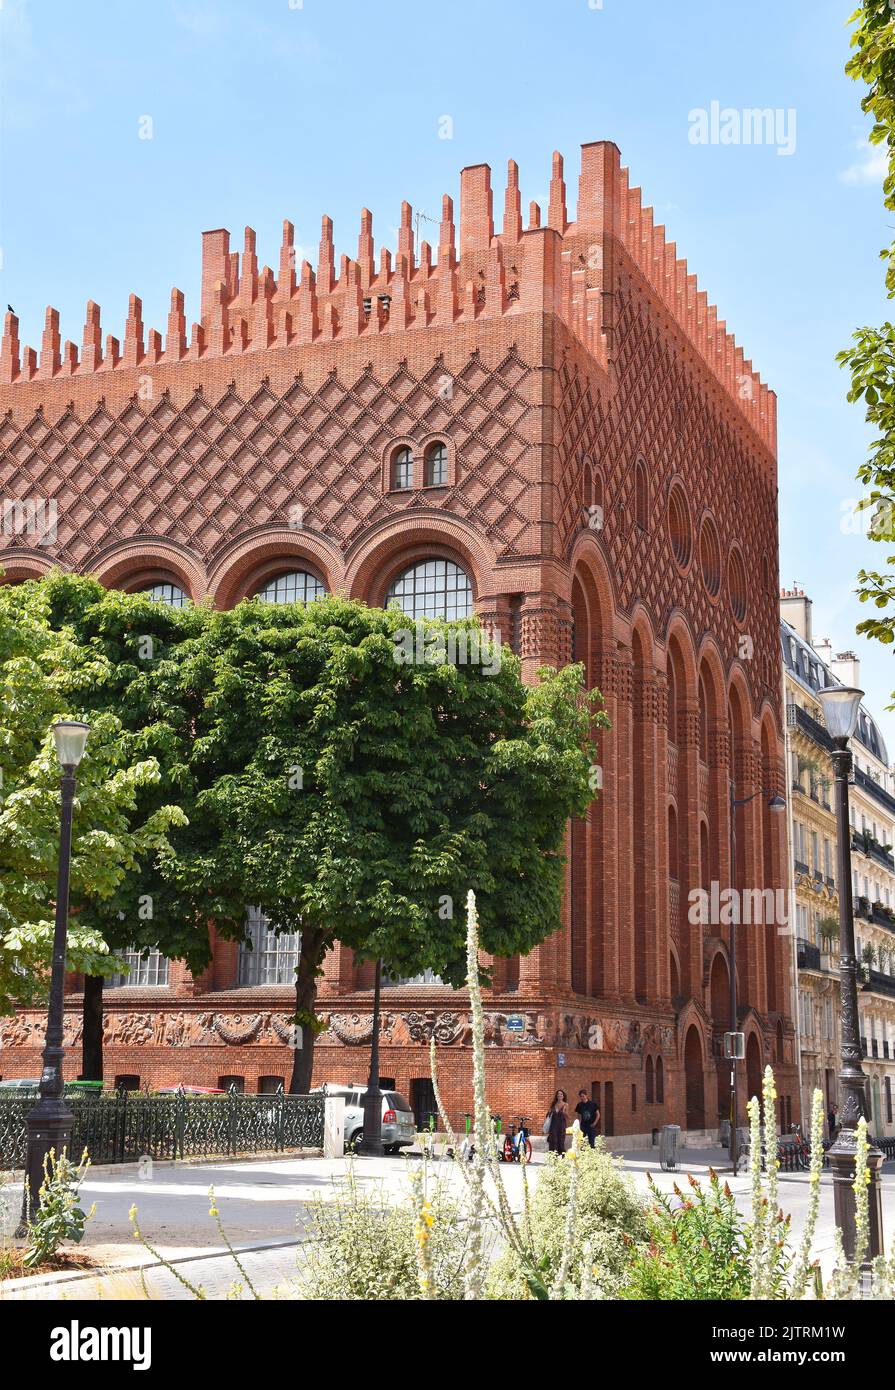 Das Institut d'Art et d'Archéologie, Paris, ein außergewöhnliches Gebäude, das mit hervorragend detailreichen und in einem eklektischen Stil ausgeführten feuerroten Mauerwerk verkleidet ist Stockfoto